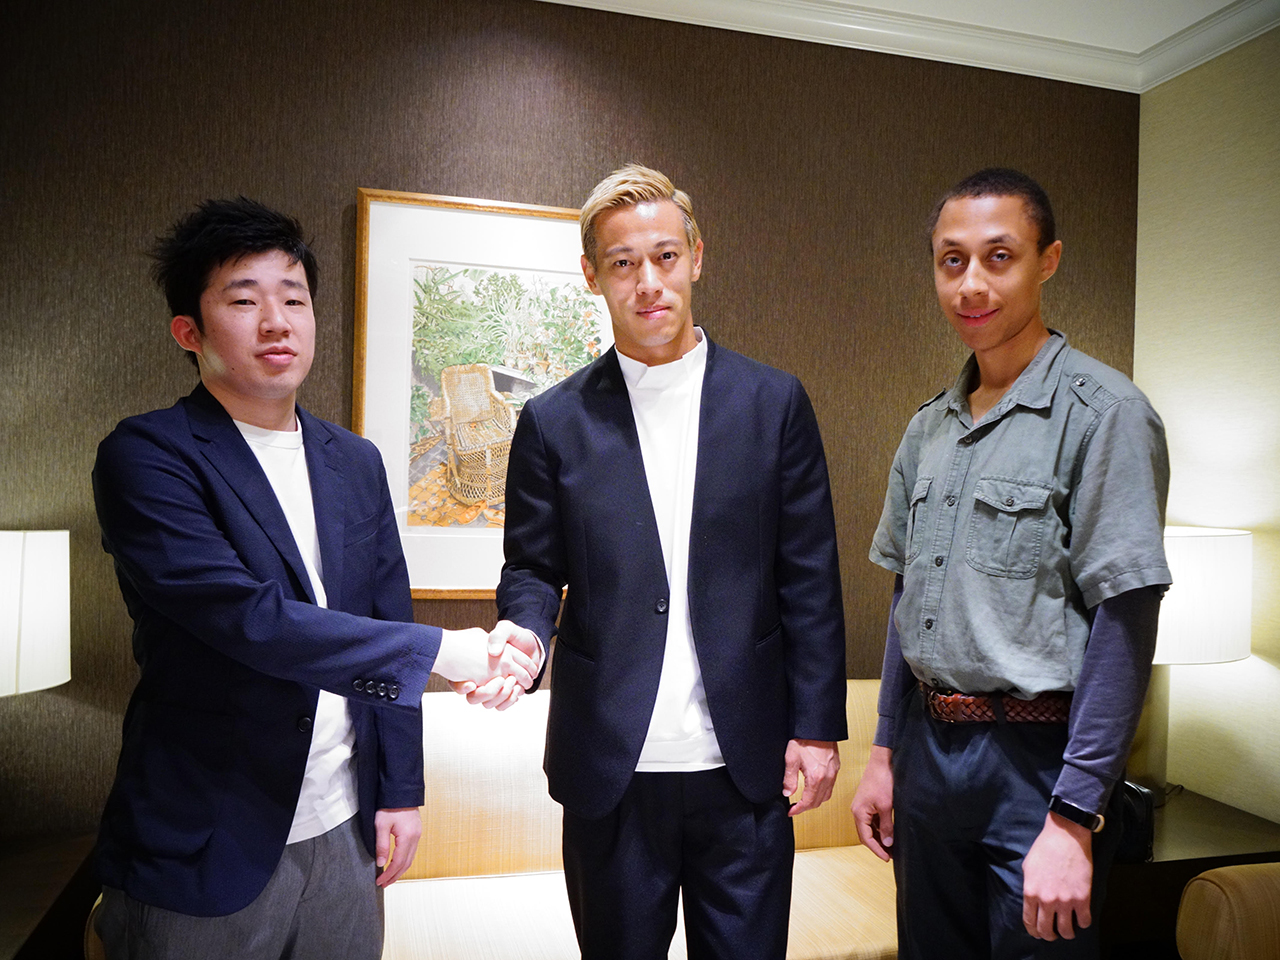 左から、ダイバーシーズ 代表取締役の洪英高氏、本田圭佑氏、ダイバーシーズ Marcus Jackson氏